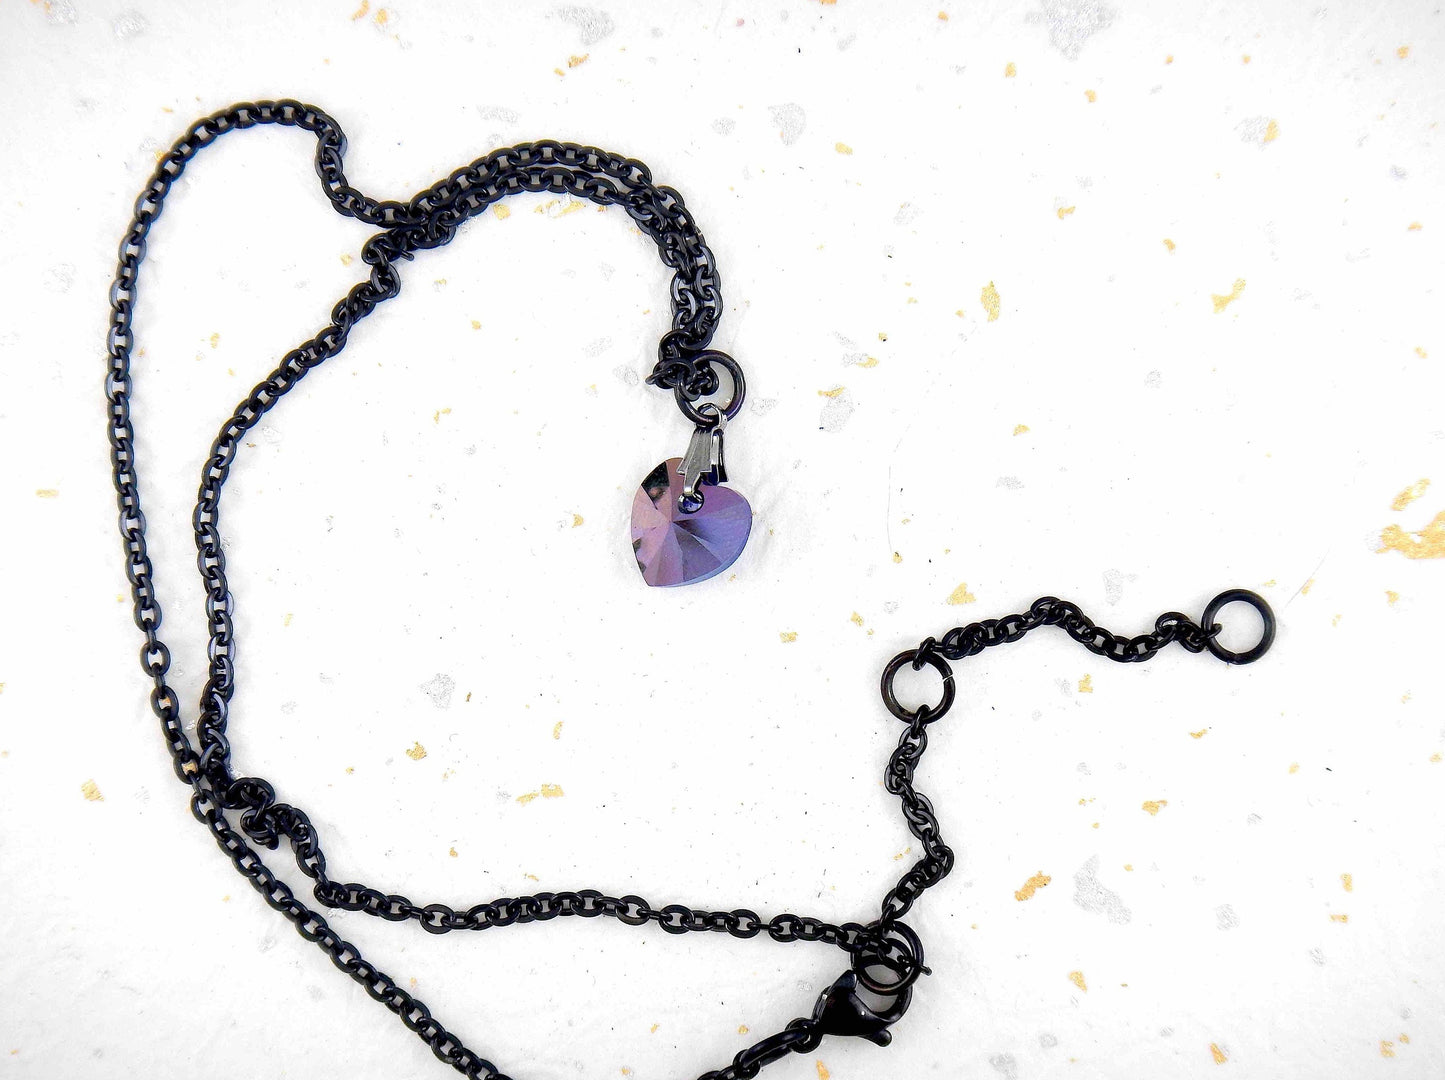 Collier 15 po à pendentif coeur de cristal Swarovski Heliotrope (bleu-violet profond) 10mm ou 15mm, chaîne acier inoxydable noir